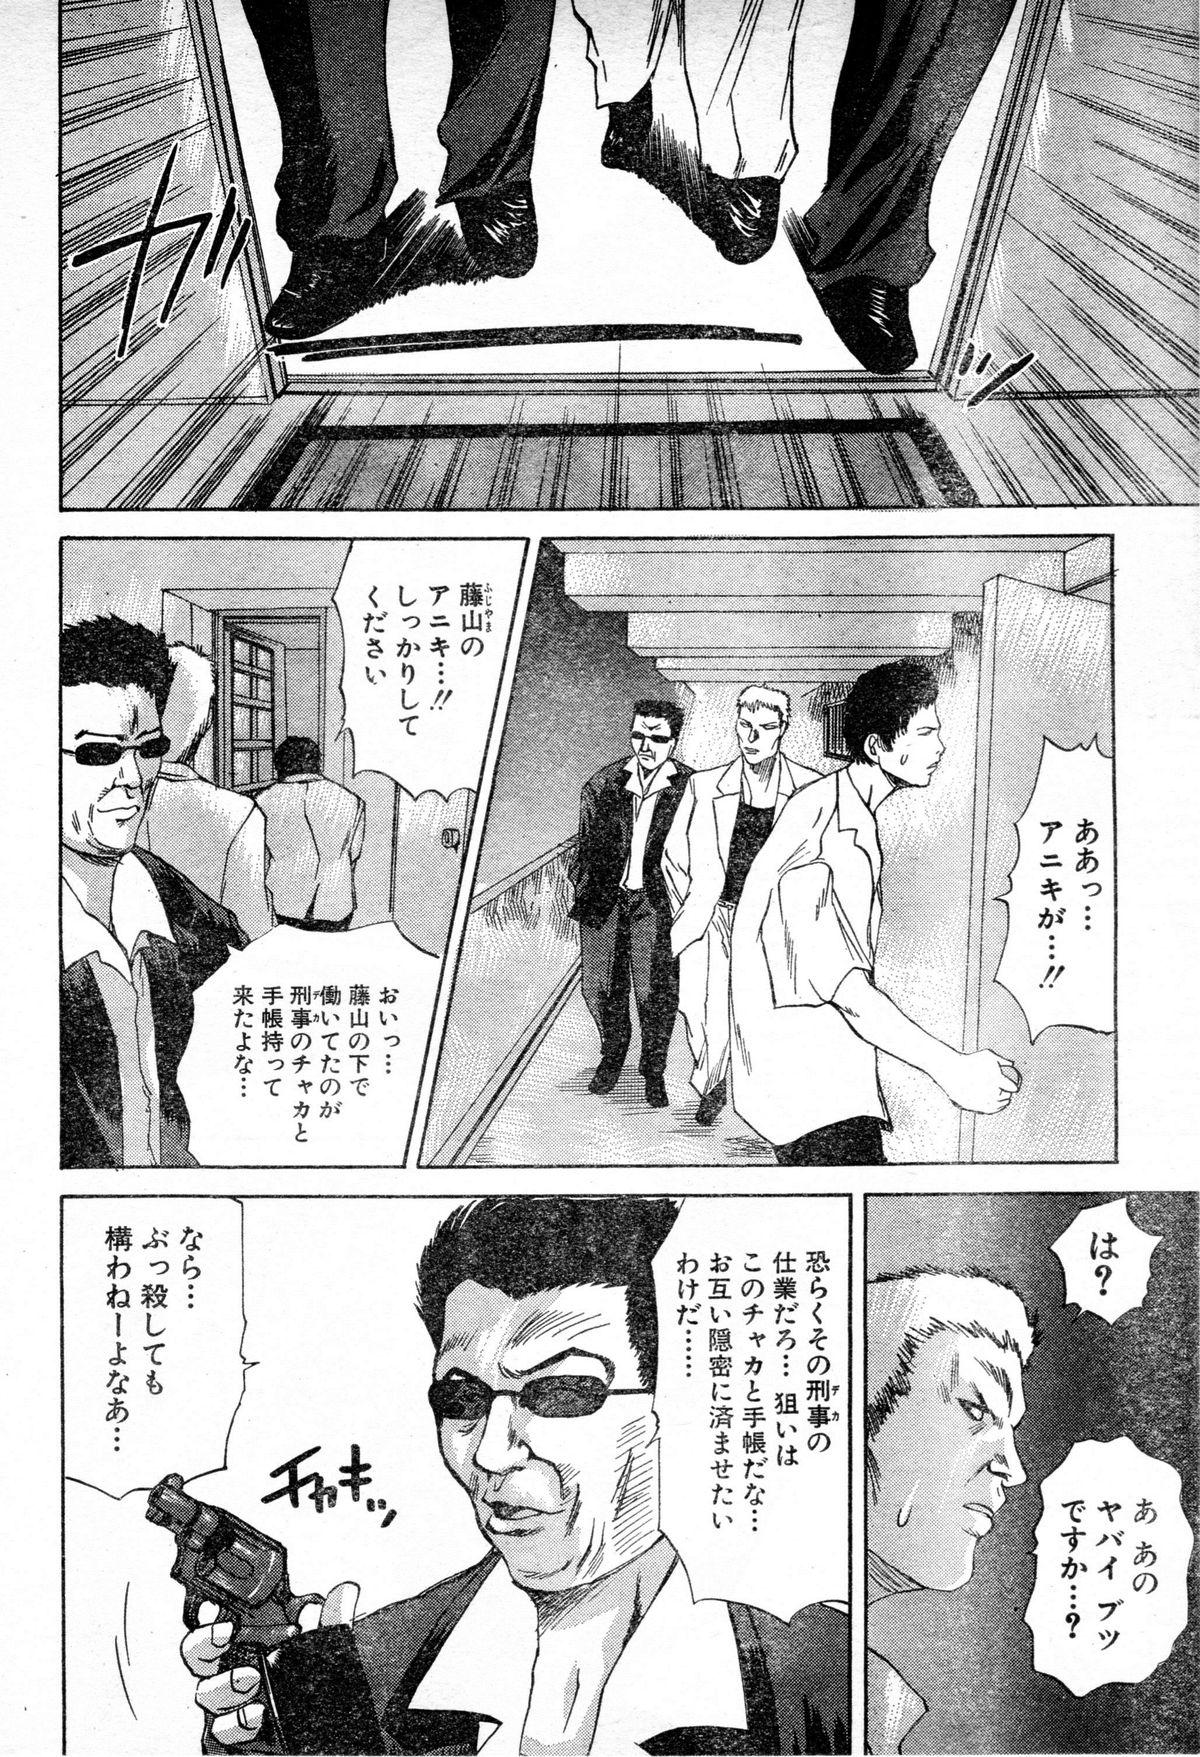 [Gekka Saeki] Gun Dancing page 8 full